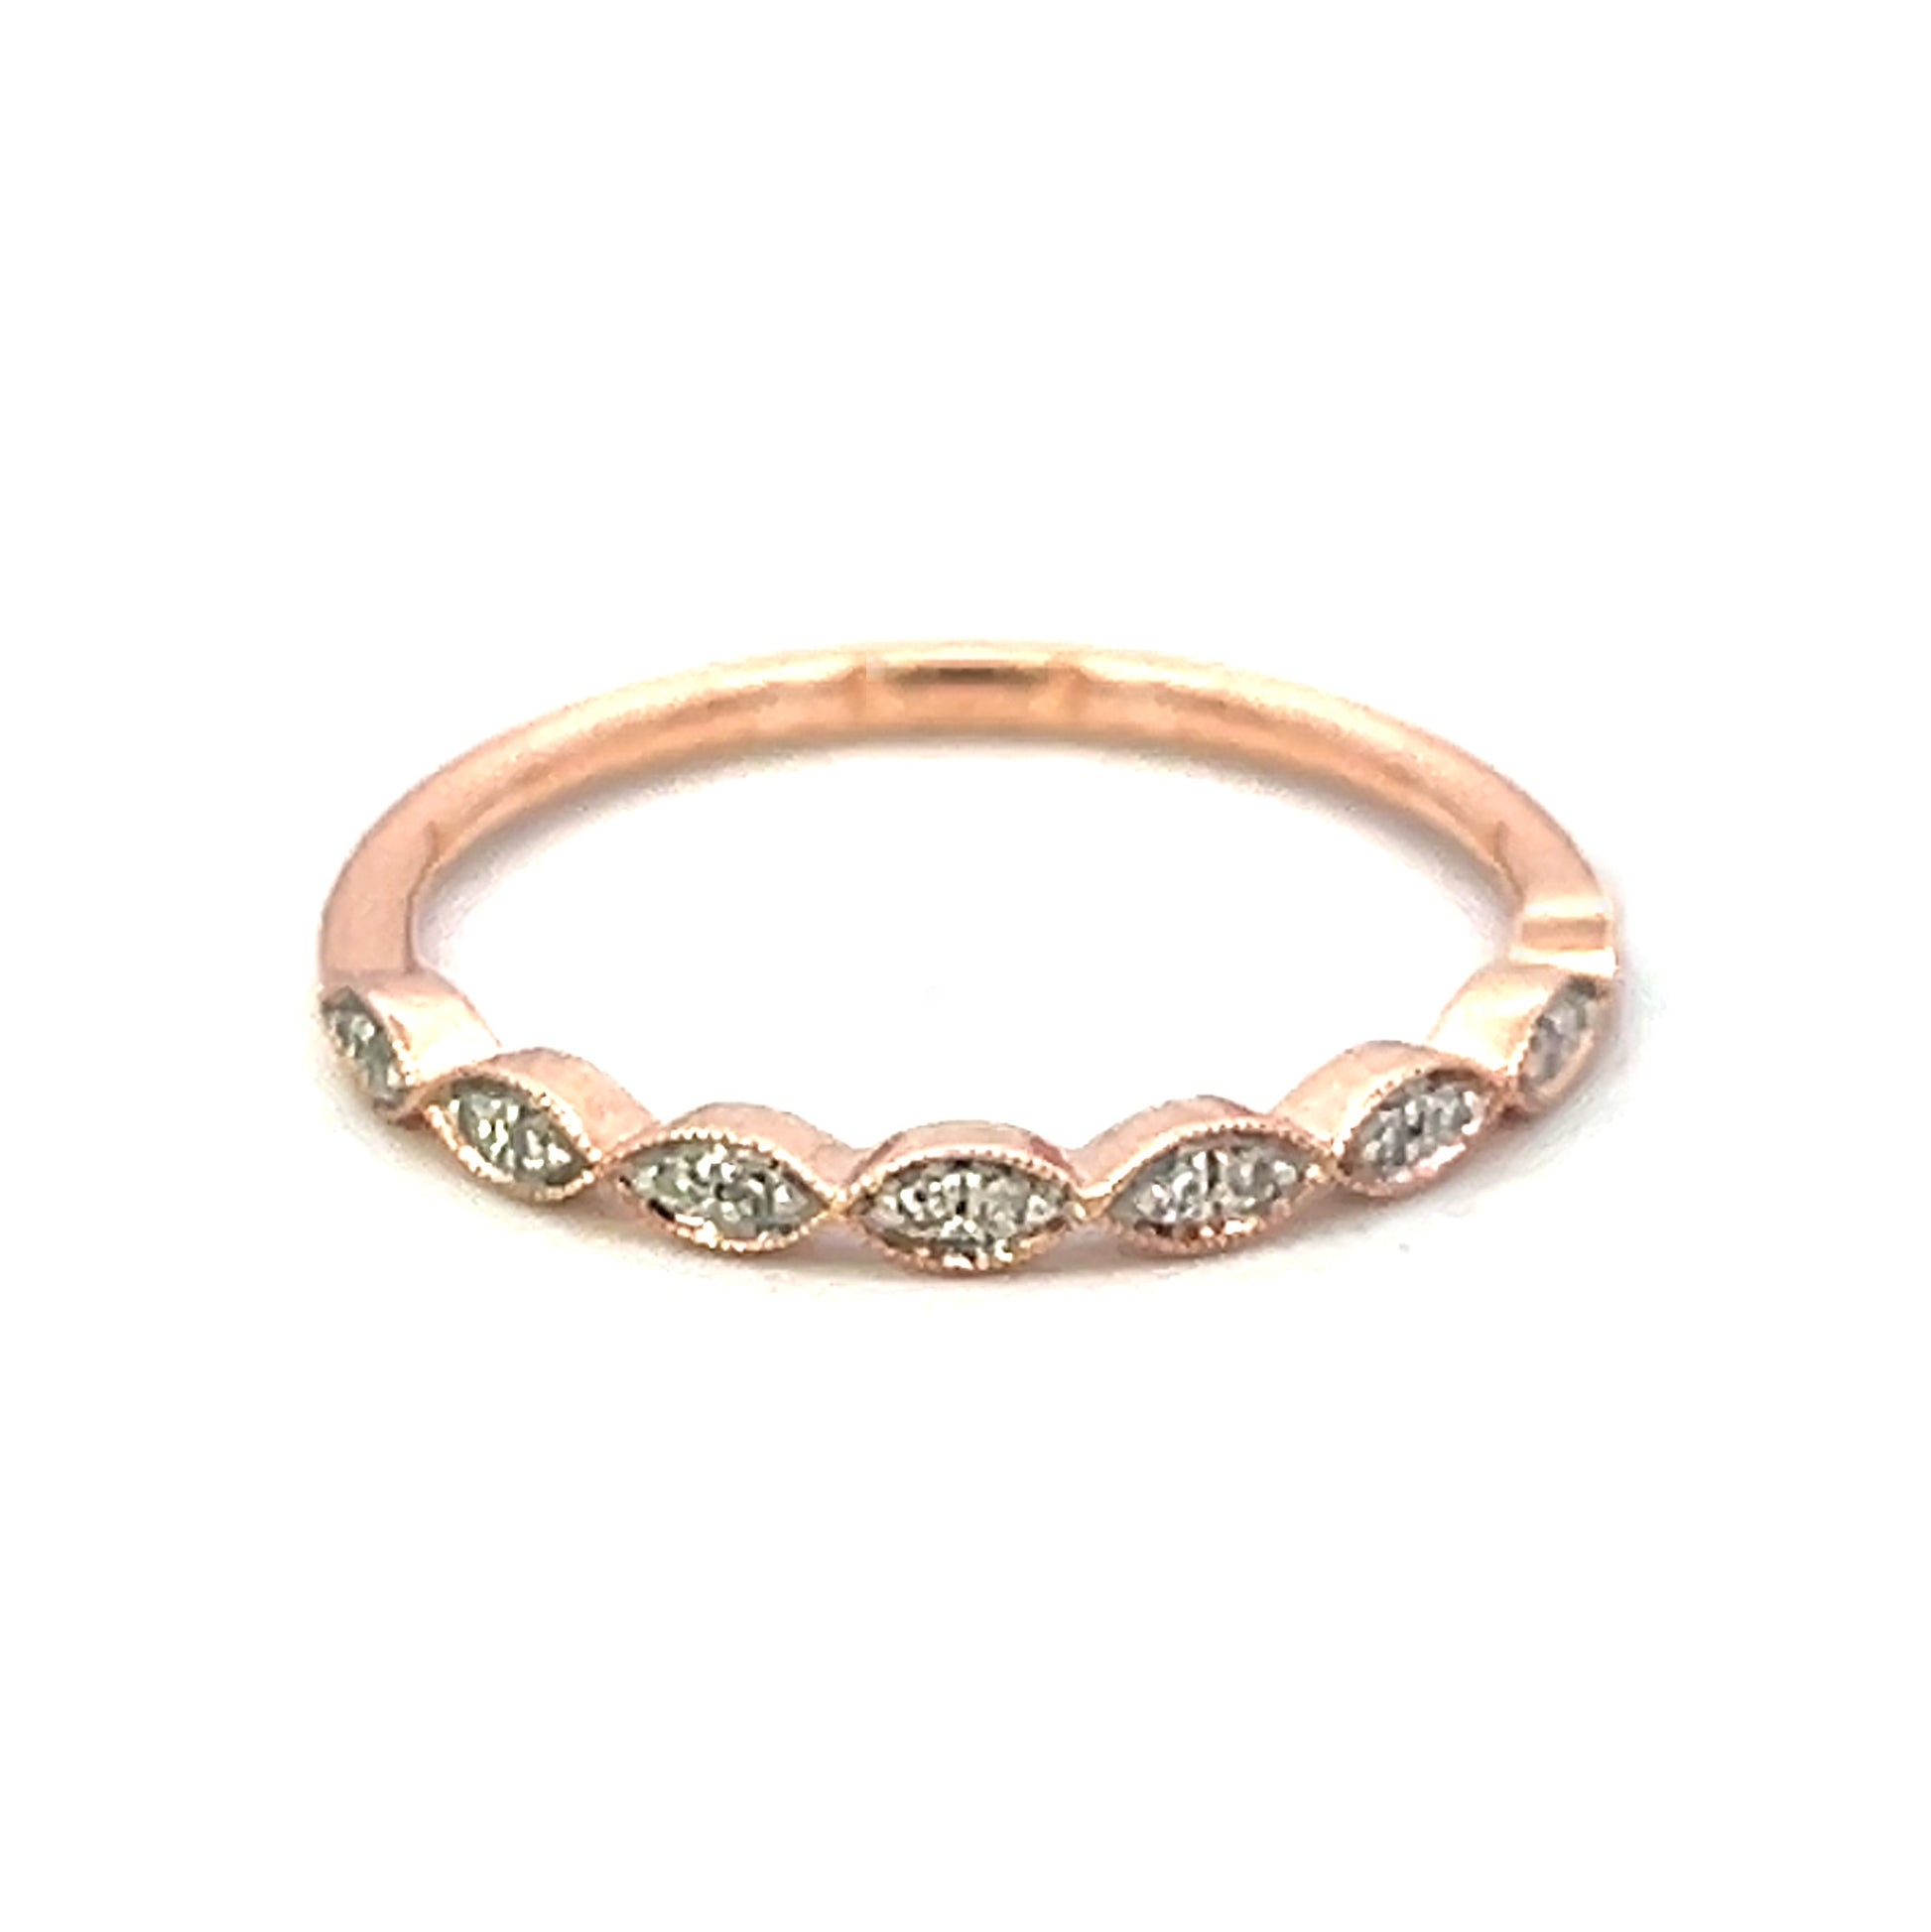 .07cttw Diamond Fashion Rings | Ring Fashion | 14k Rose Gold